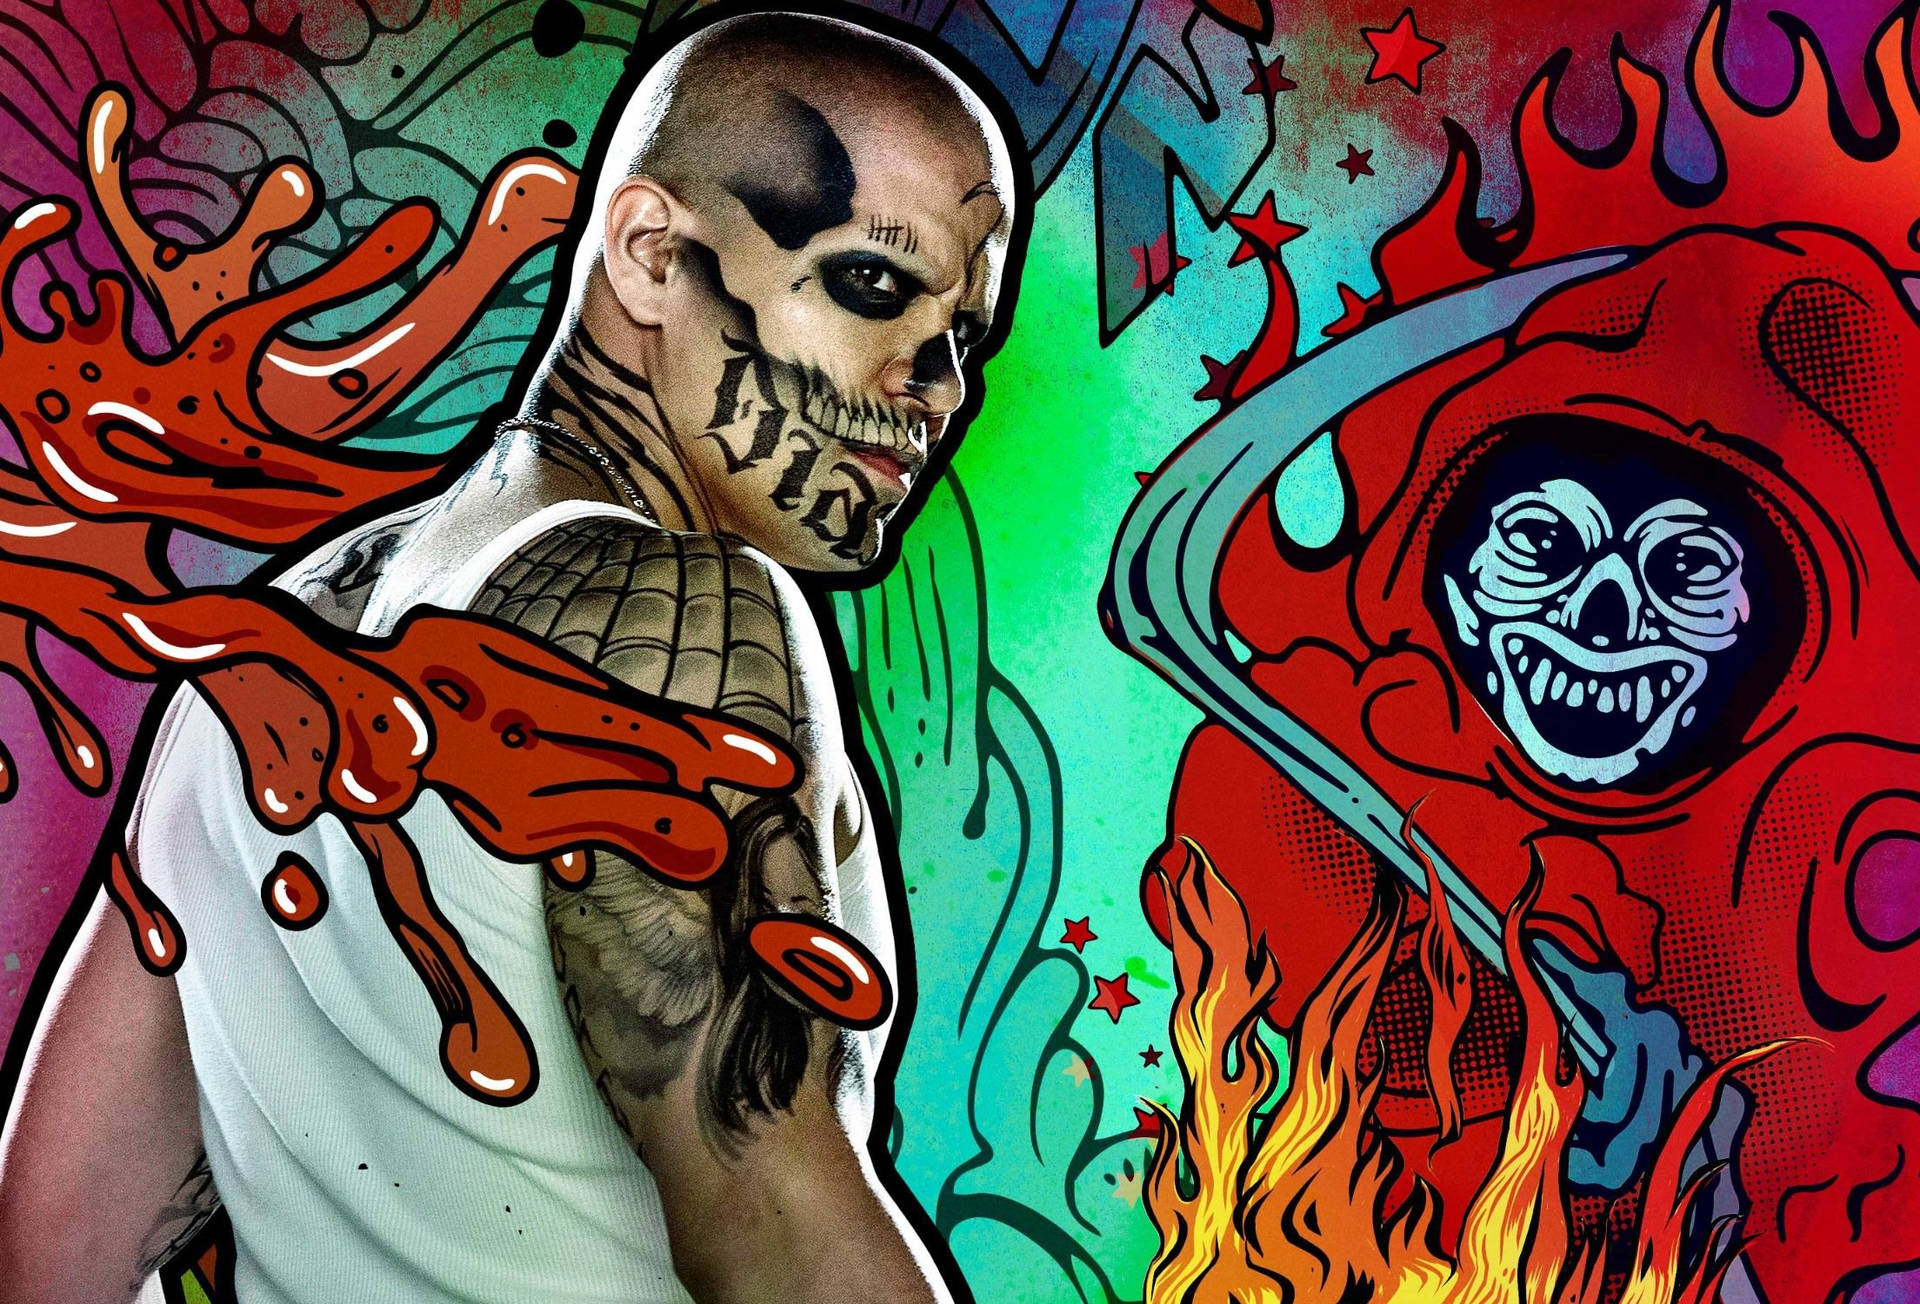 Witness El Diablo's fiery powers in Suicide Squad! Wallpaper